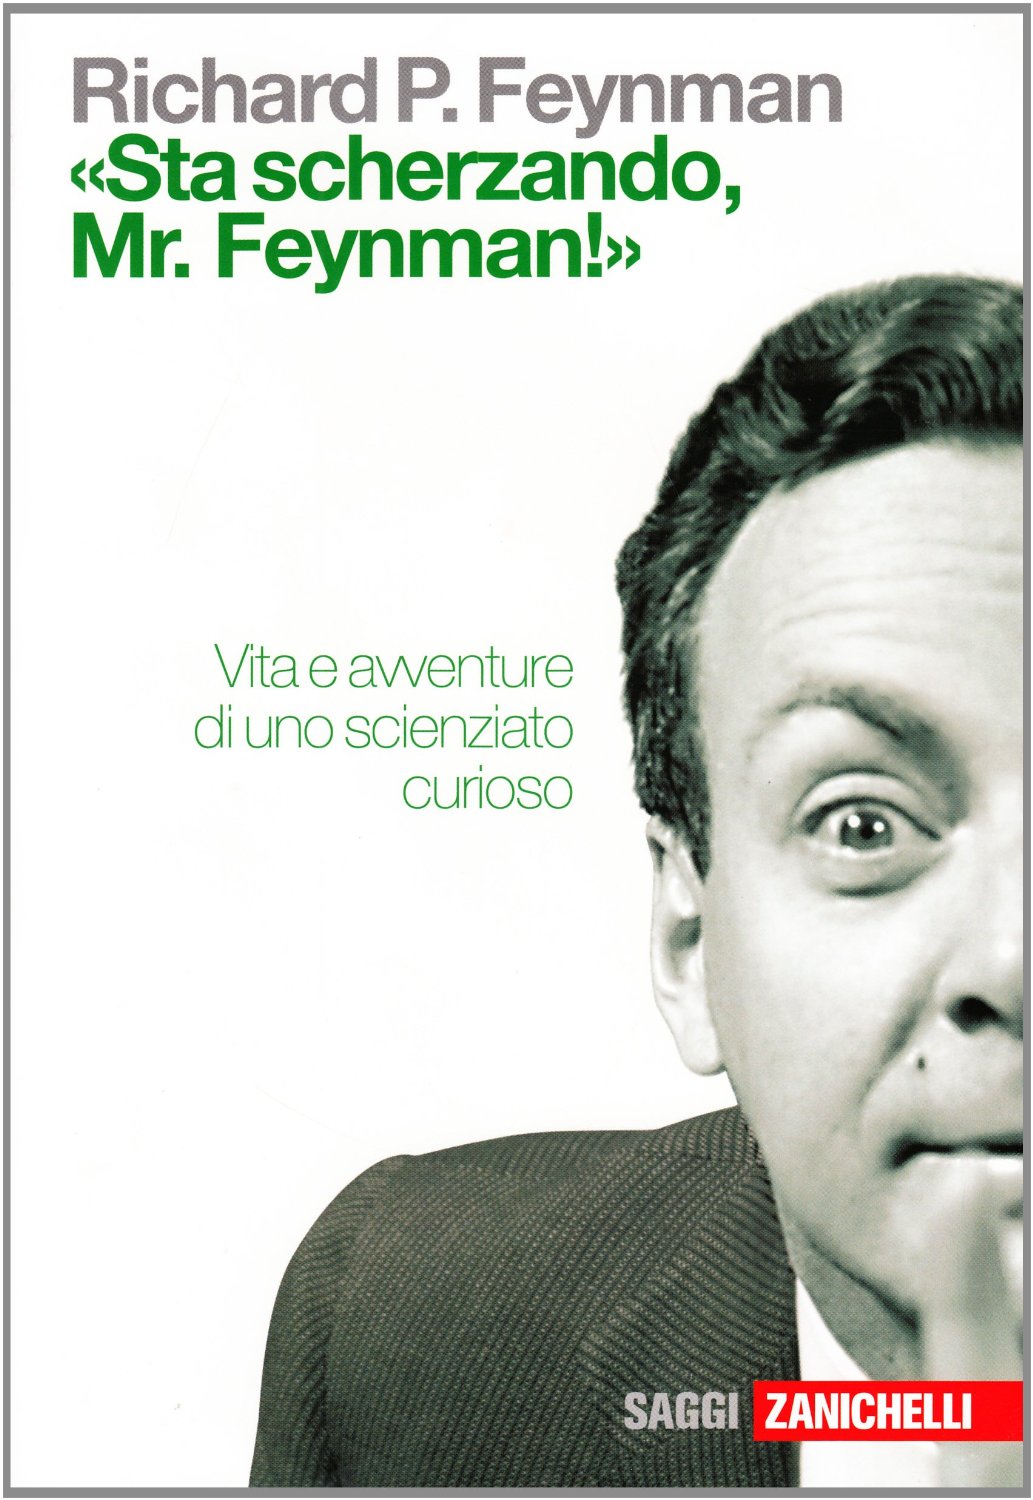 Feynman Richard - 1985 - «Sta scherzando Mr. Feynman!» Vita e avventure di uno scienziato curioso